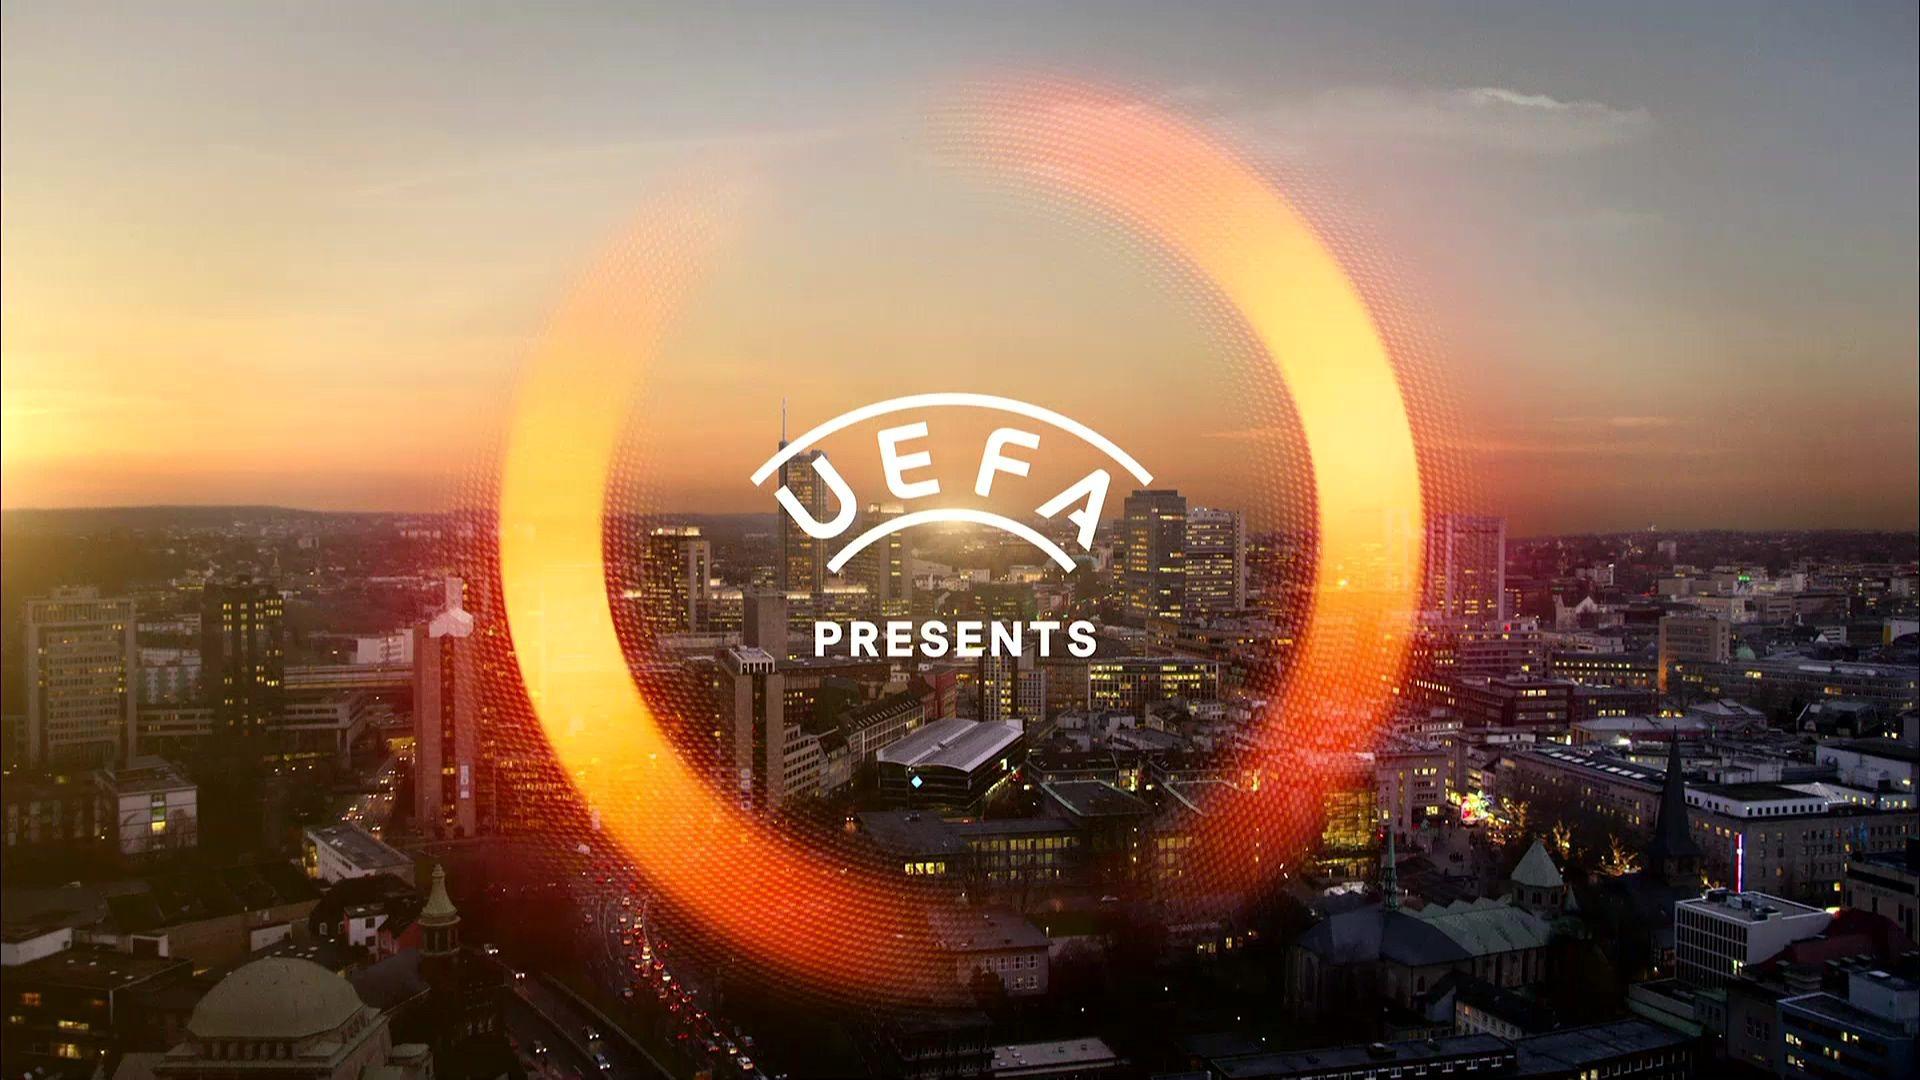 FUTBOL: UEFA Europa League Highlights 05 2017